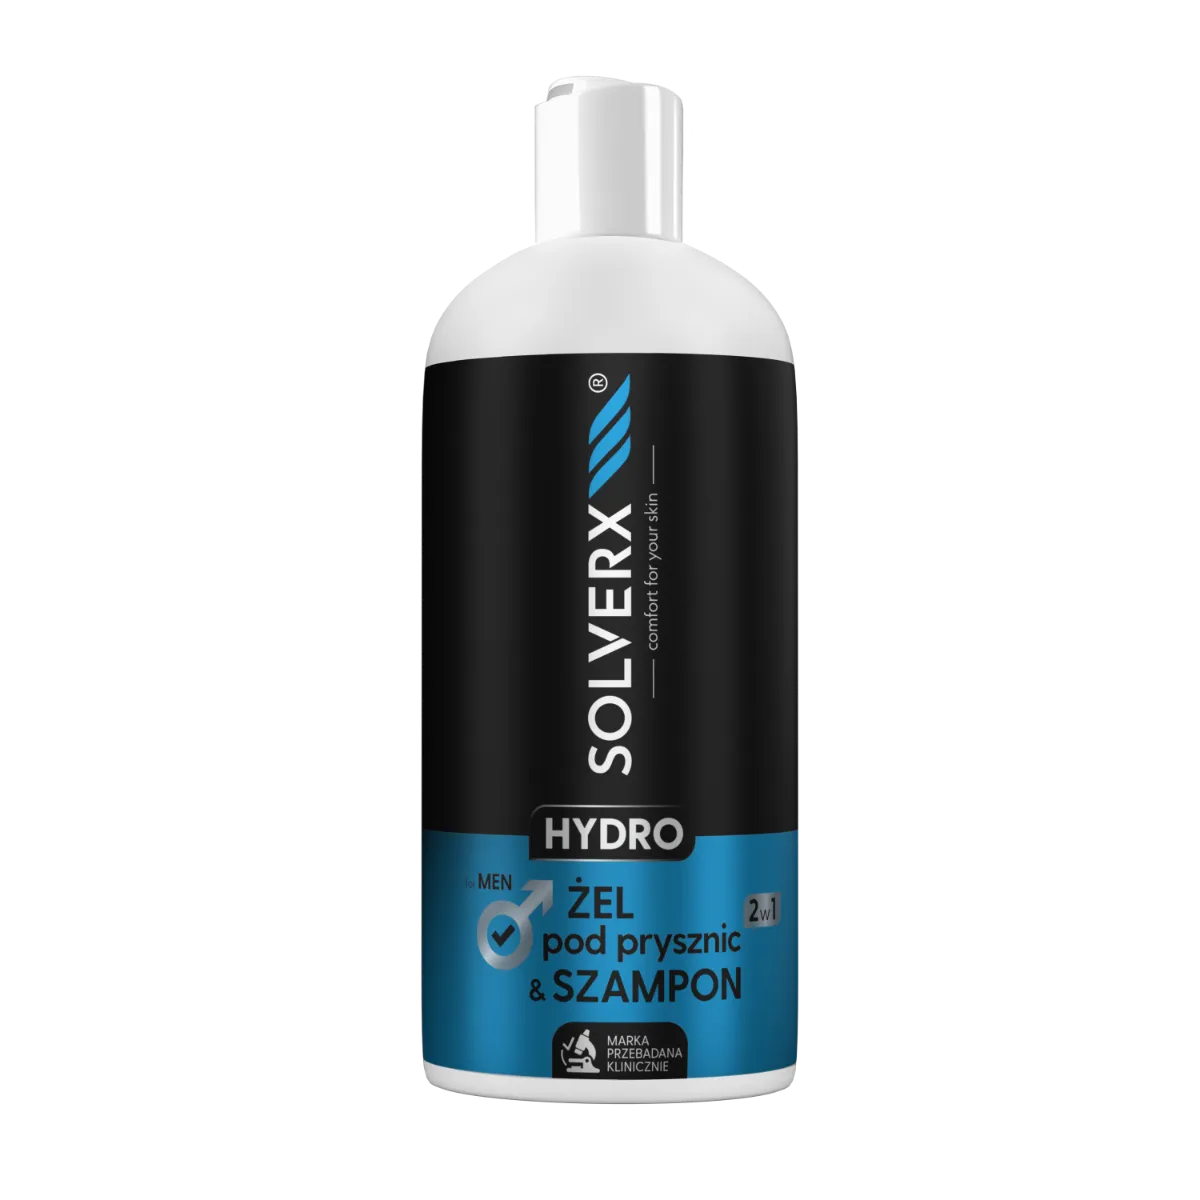 Solverx Hydro Men Żel & szampon 2w1, 400 ml